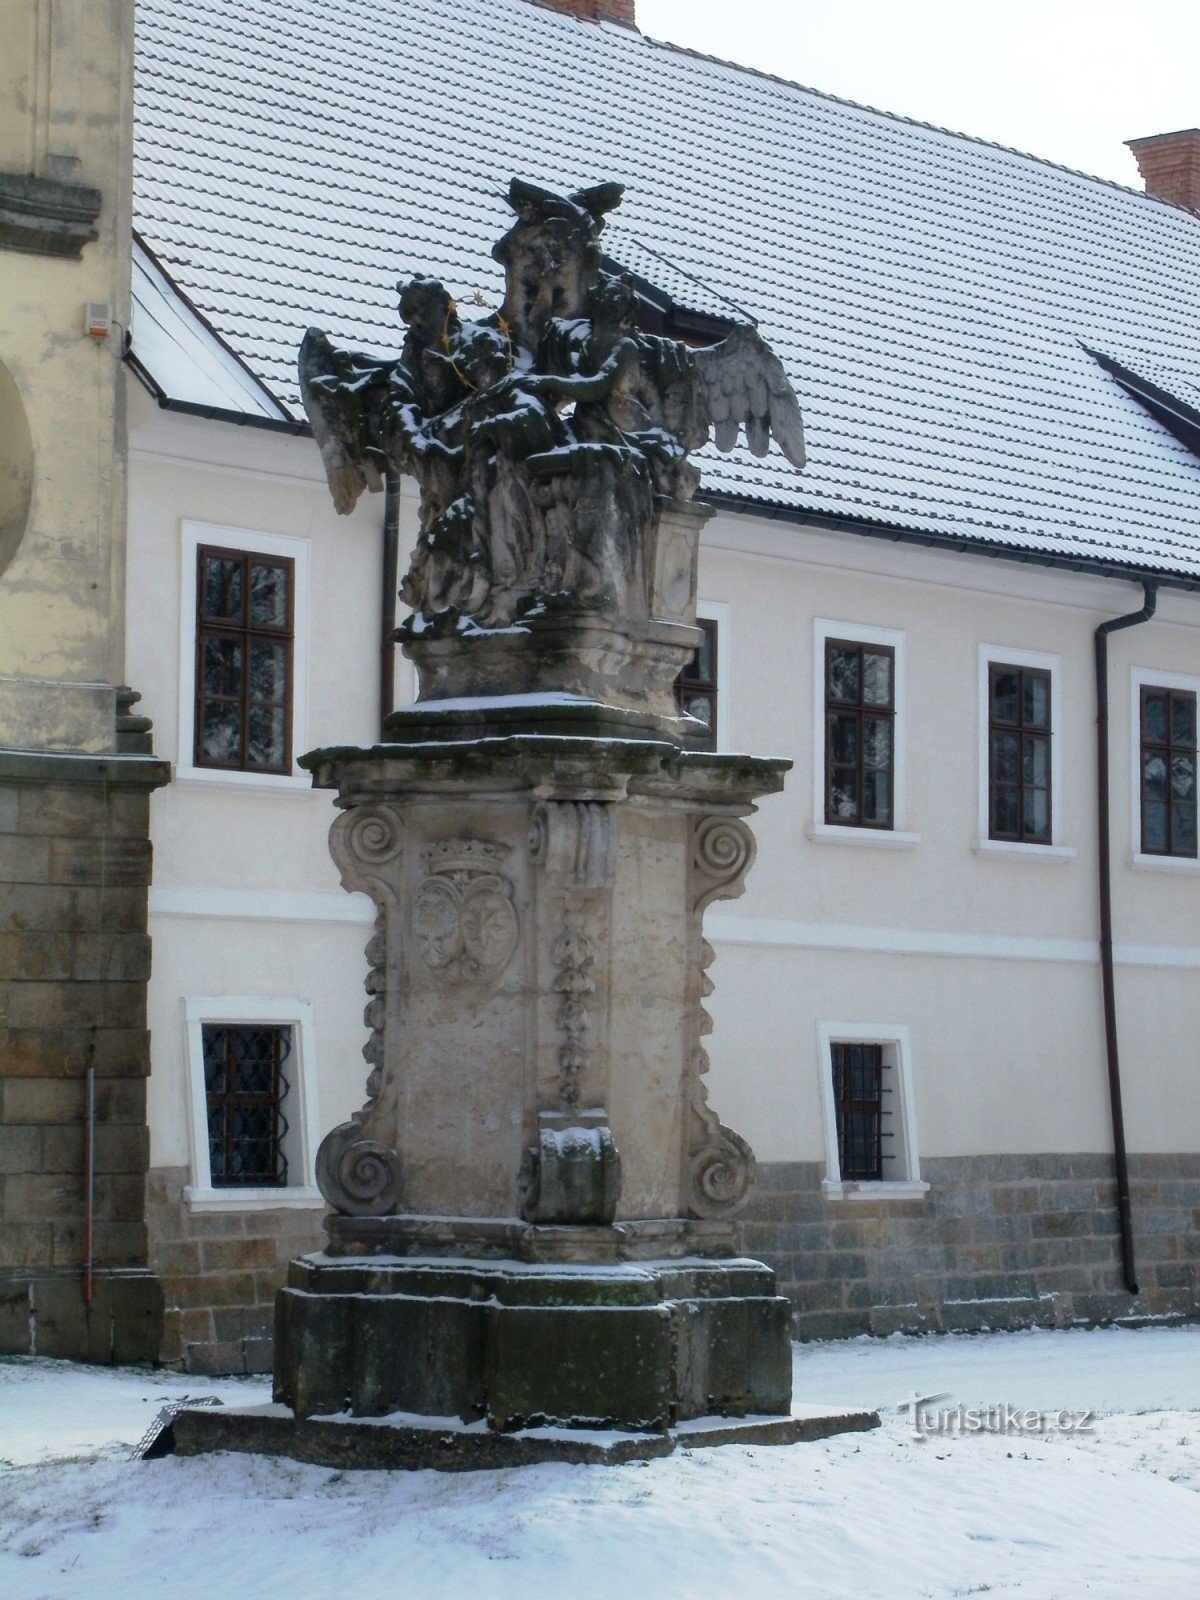 Smiřice - bức tượng của St. John of Nepomuck với các thiên thần